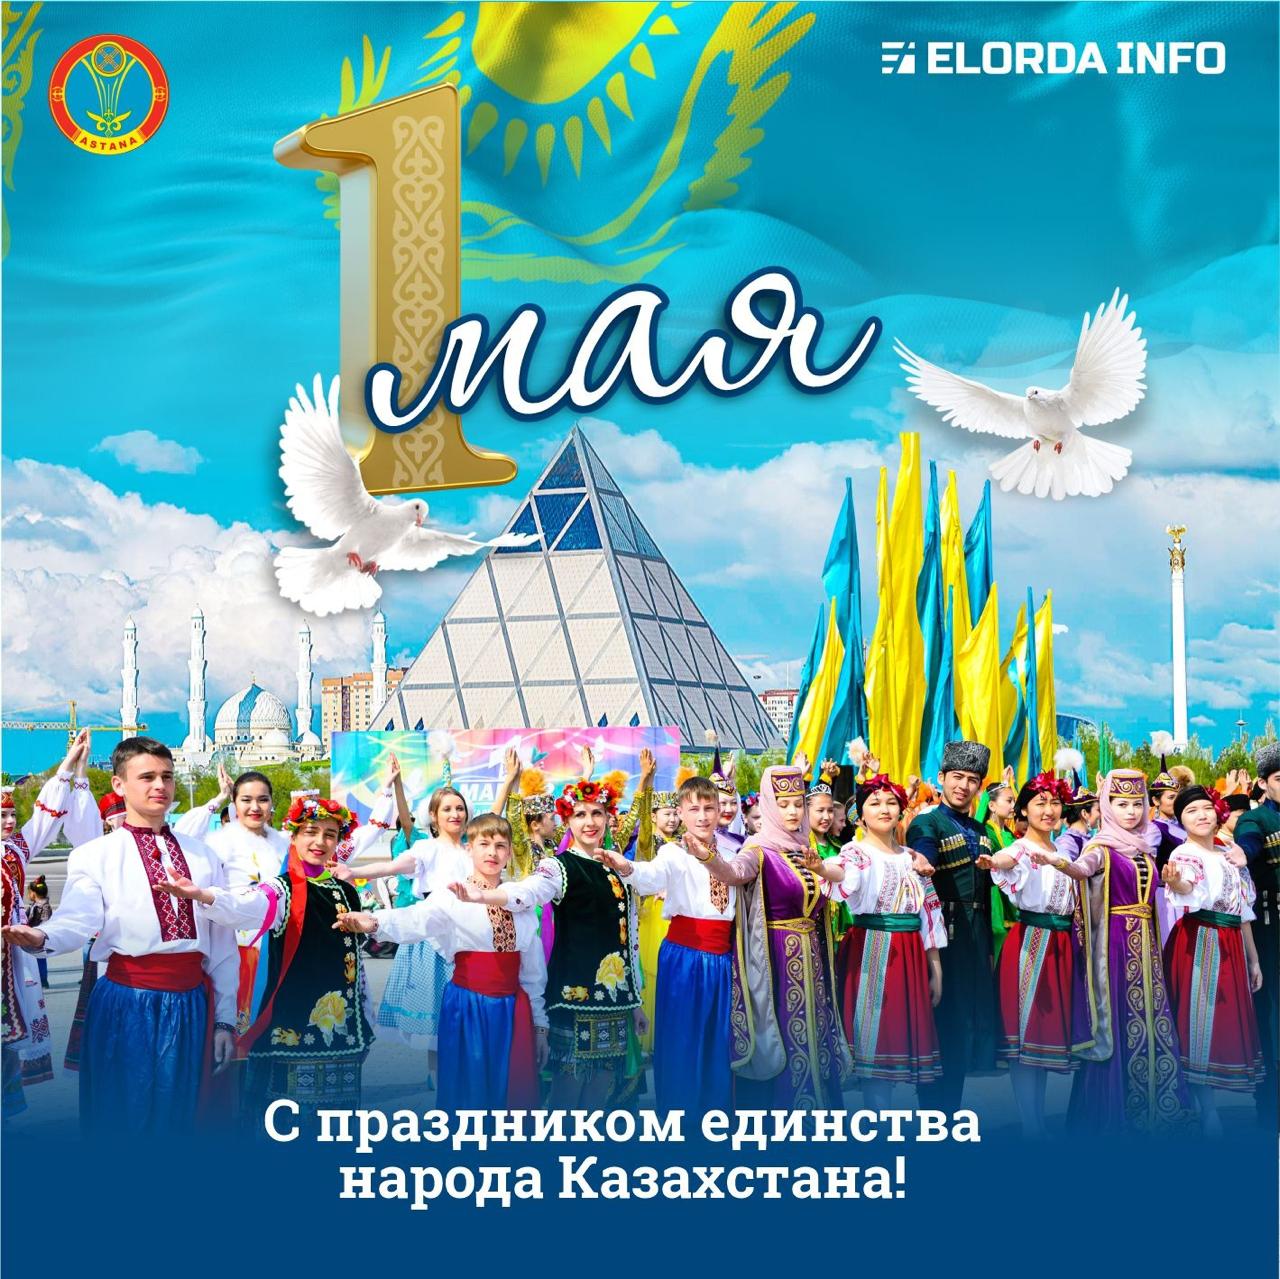 1 Мая - День единства народа Казахстана